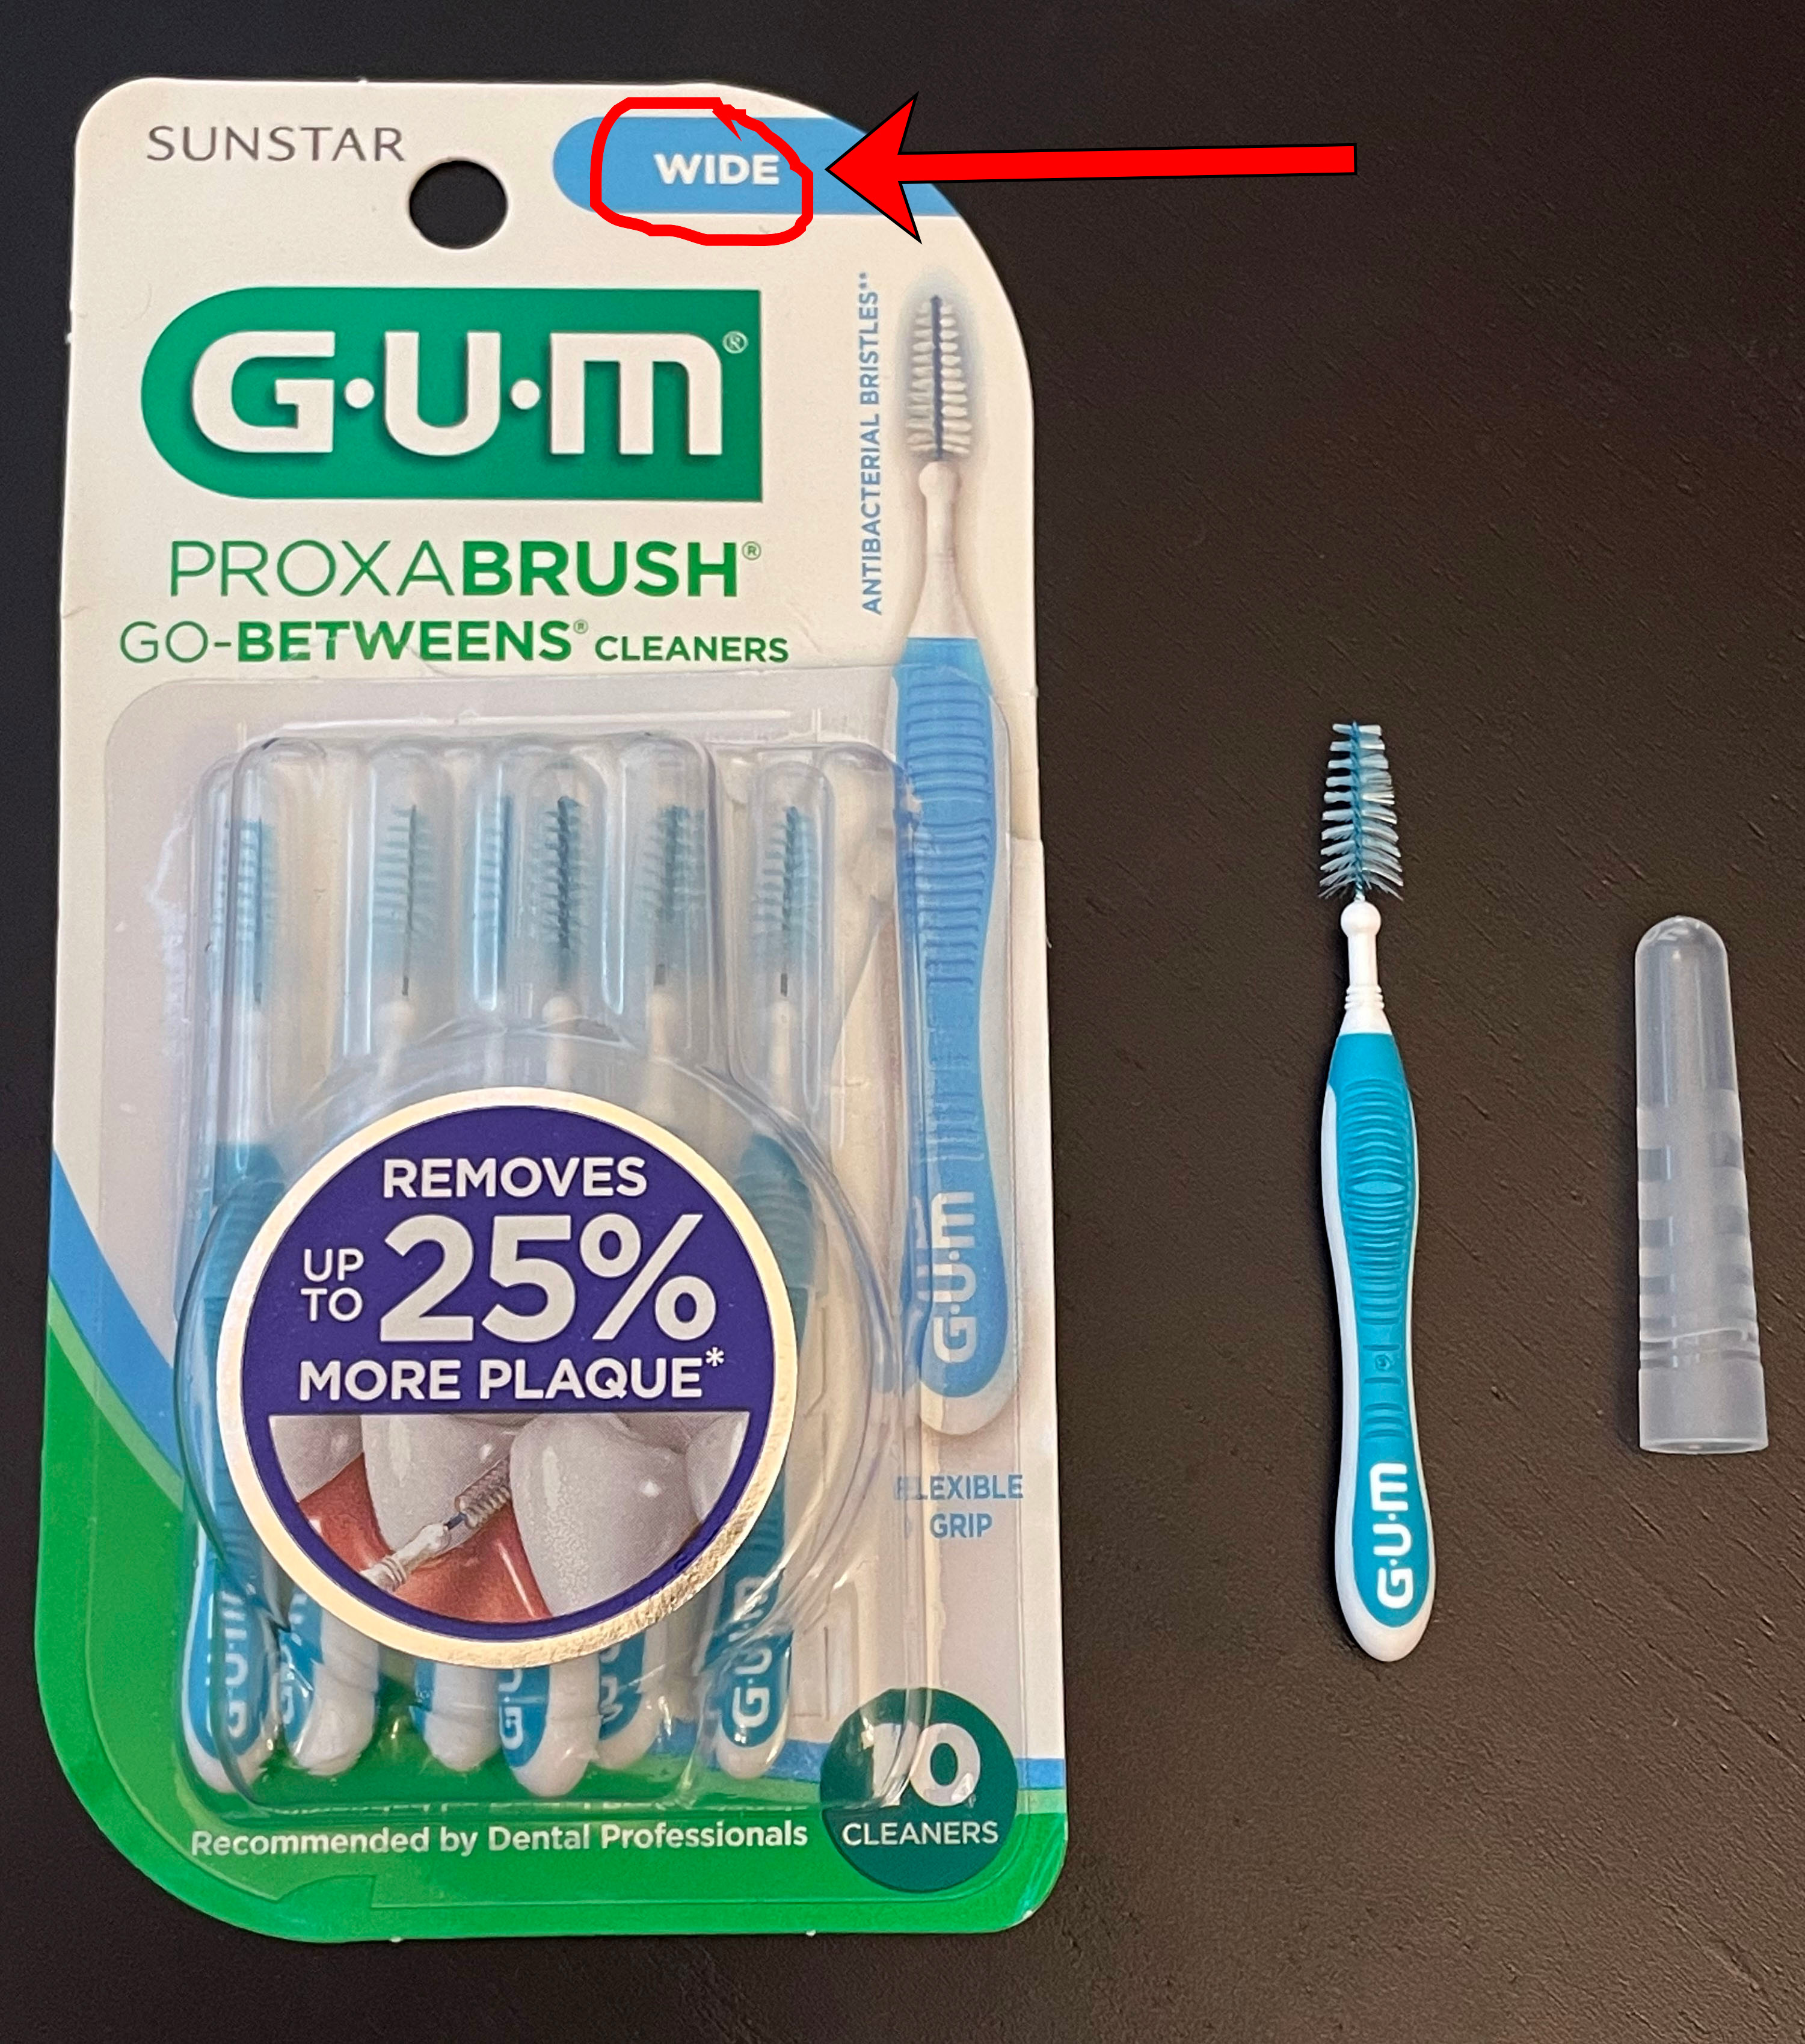 Interdental/Gum brush example